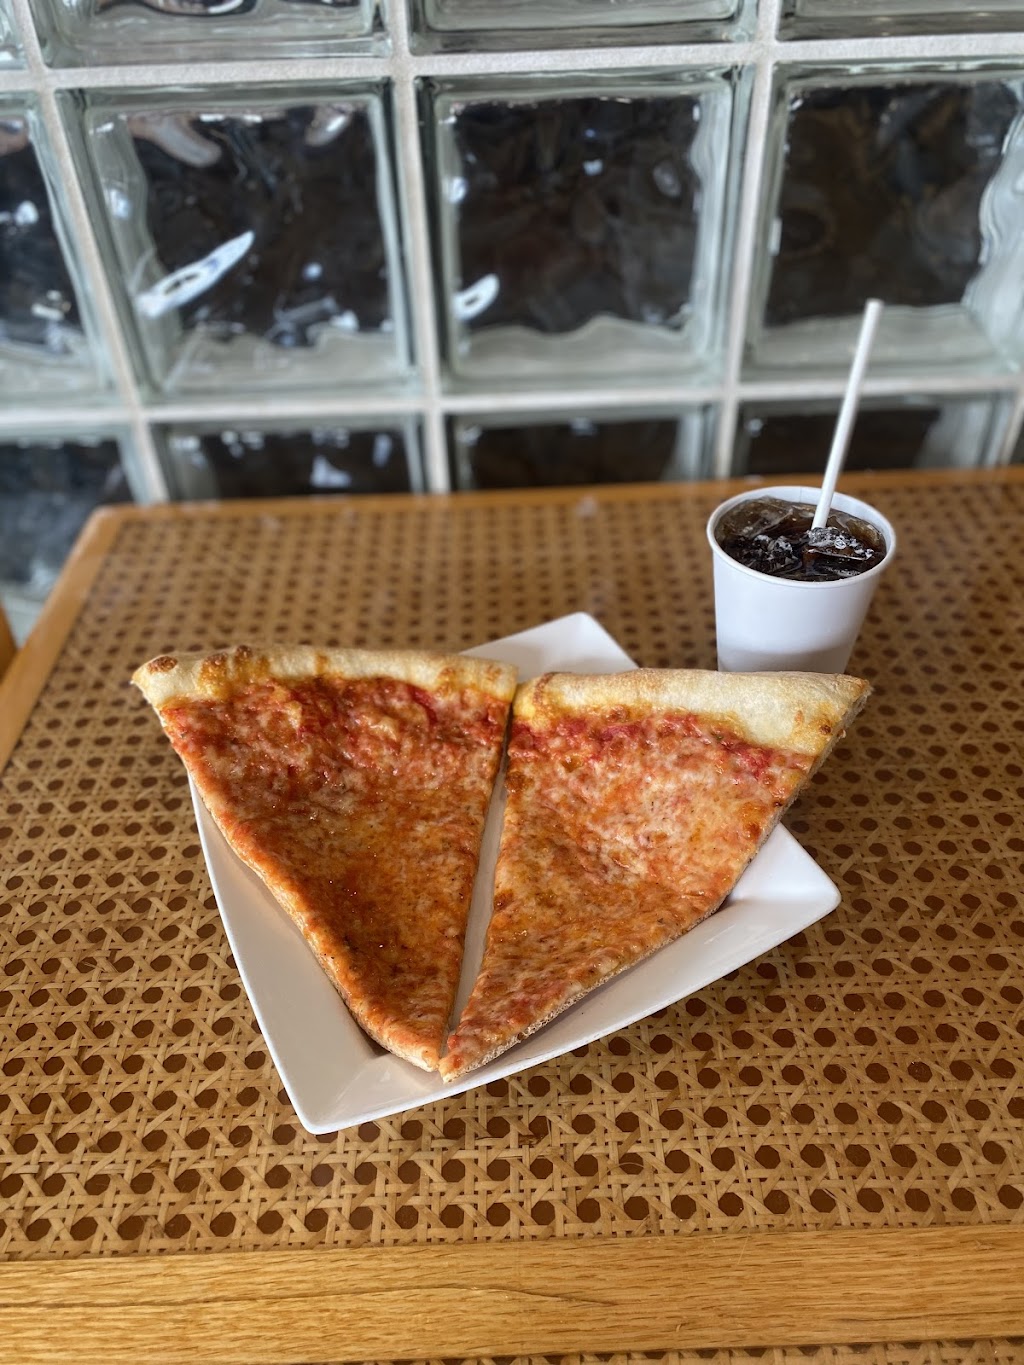 Marcony Pizza & Pasta Restaurant | 73 Howells Rd, Bay Shore, NY 11706 | Phone: (631) 665-2524